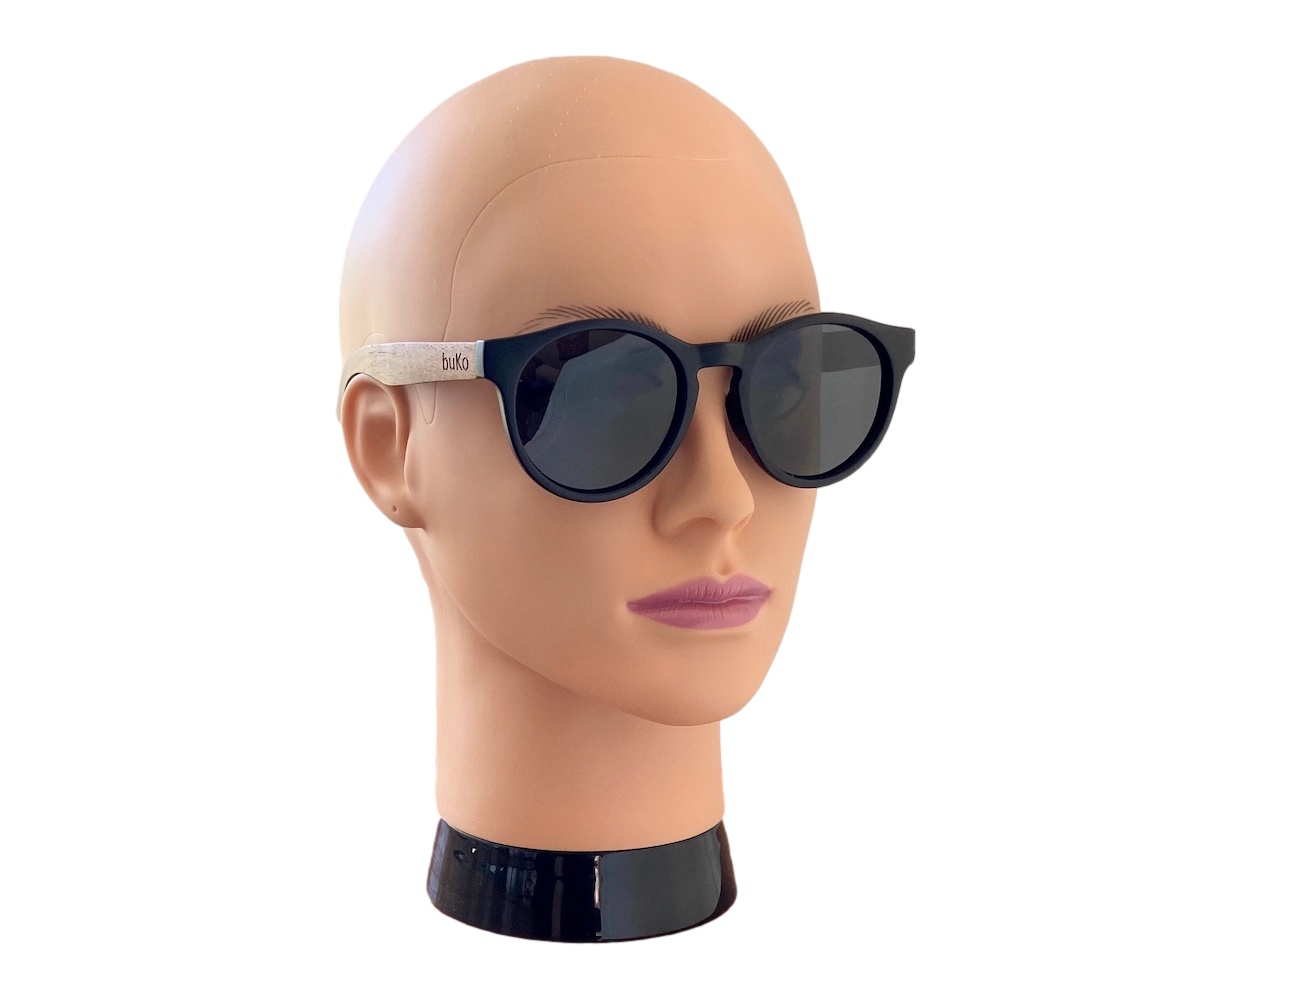 rendezvous wooden sunglasses on female model